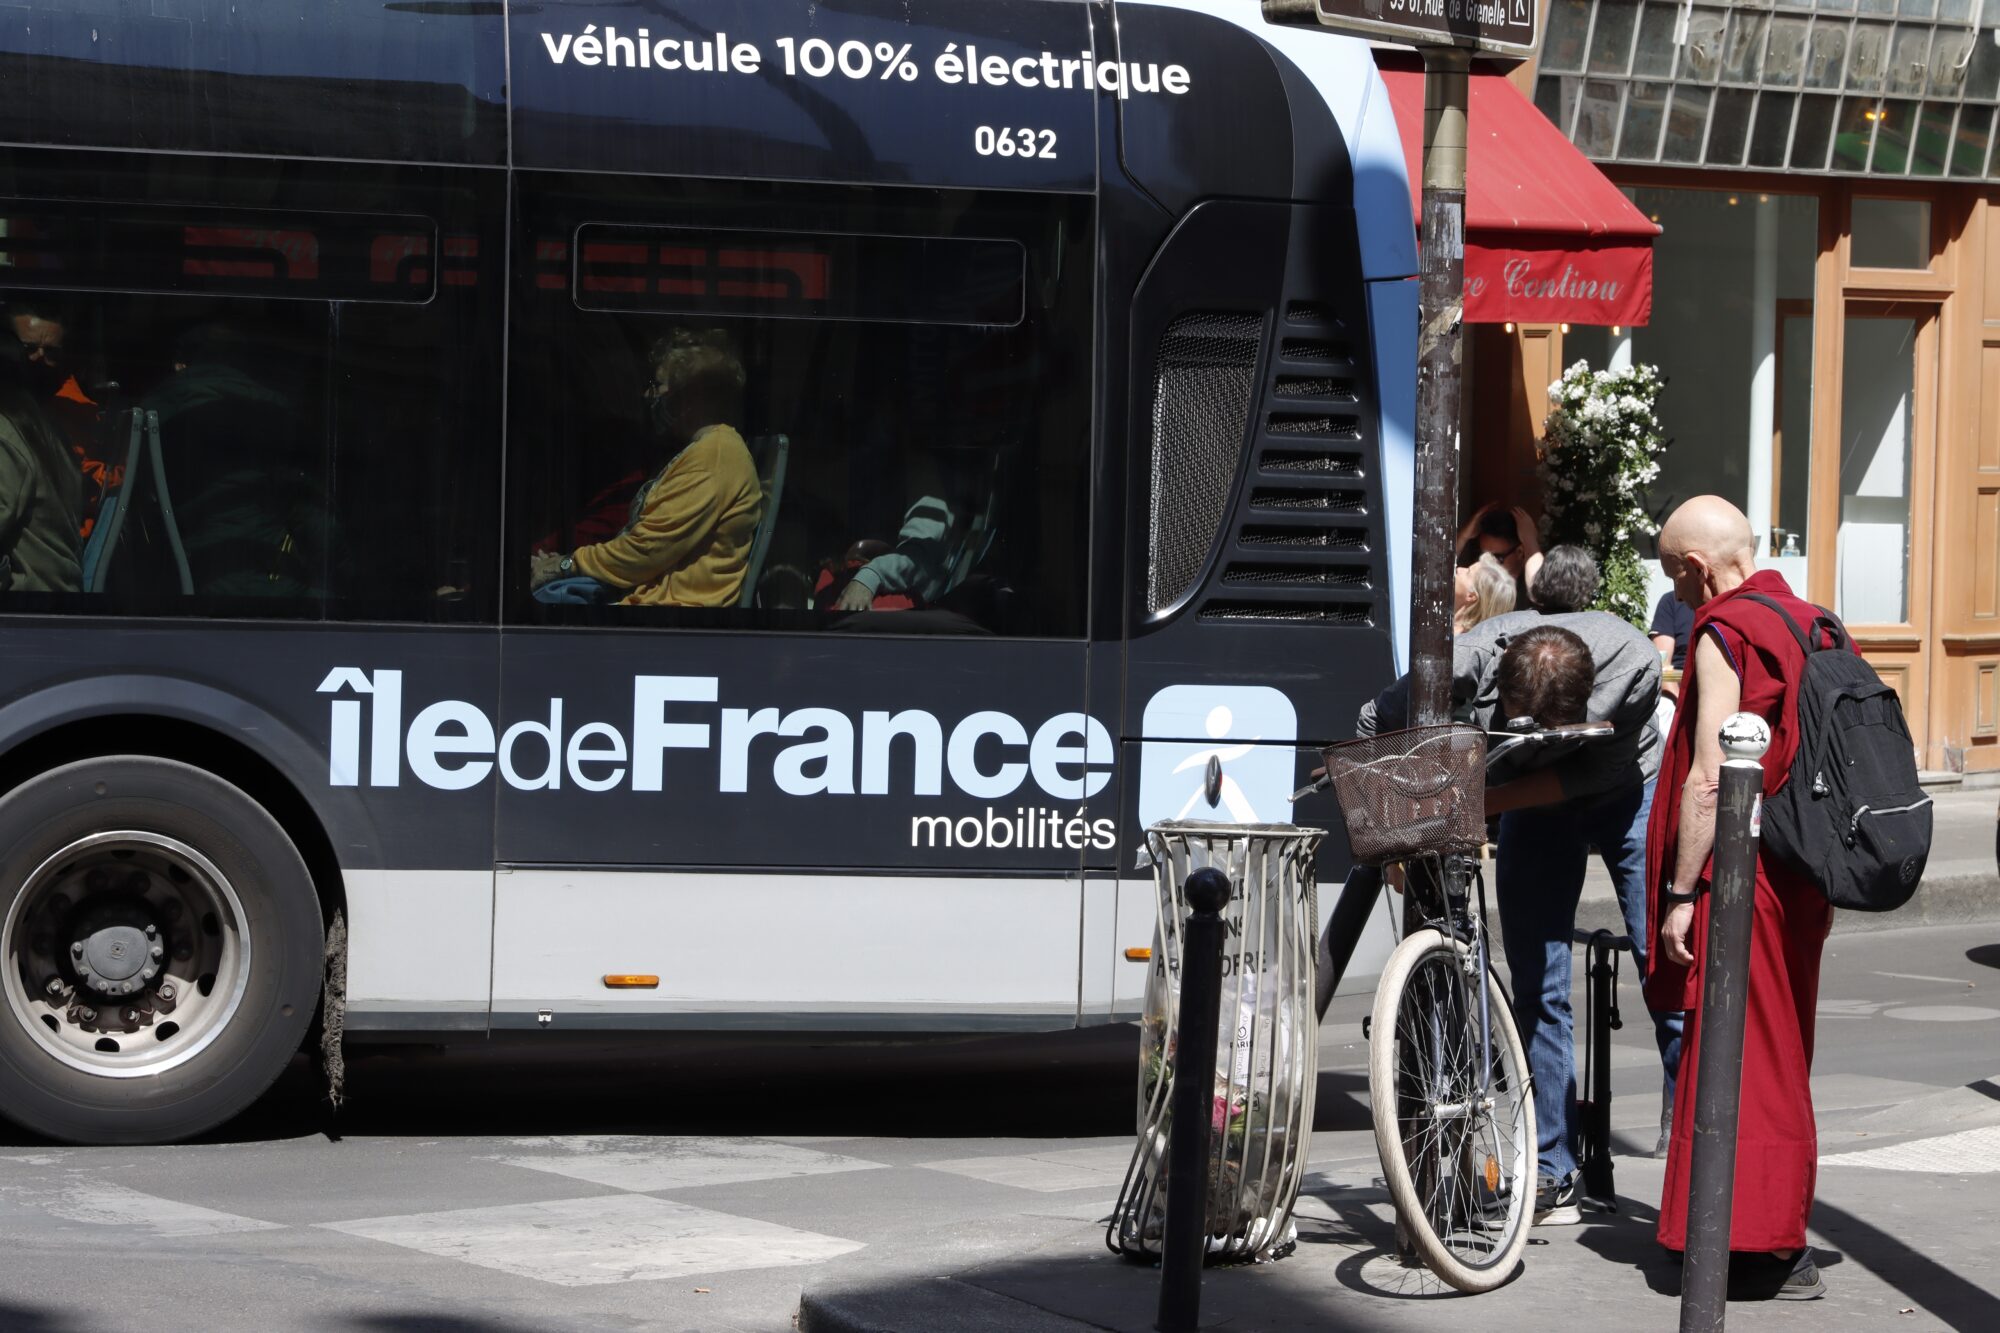 New BRT for Île-de-France unveiled until 2030